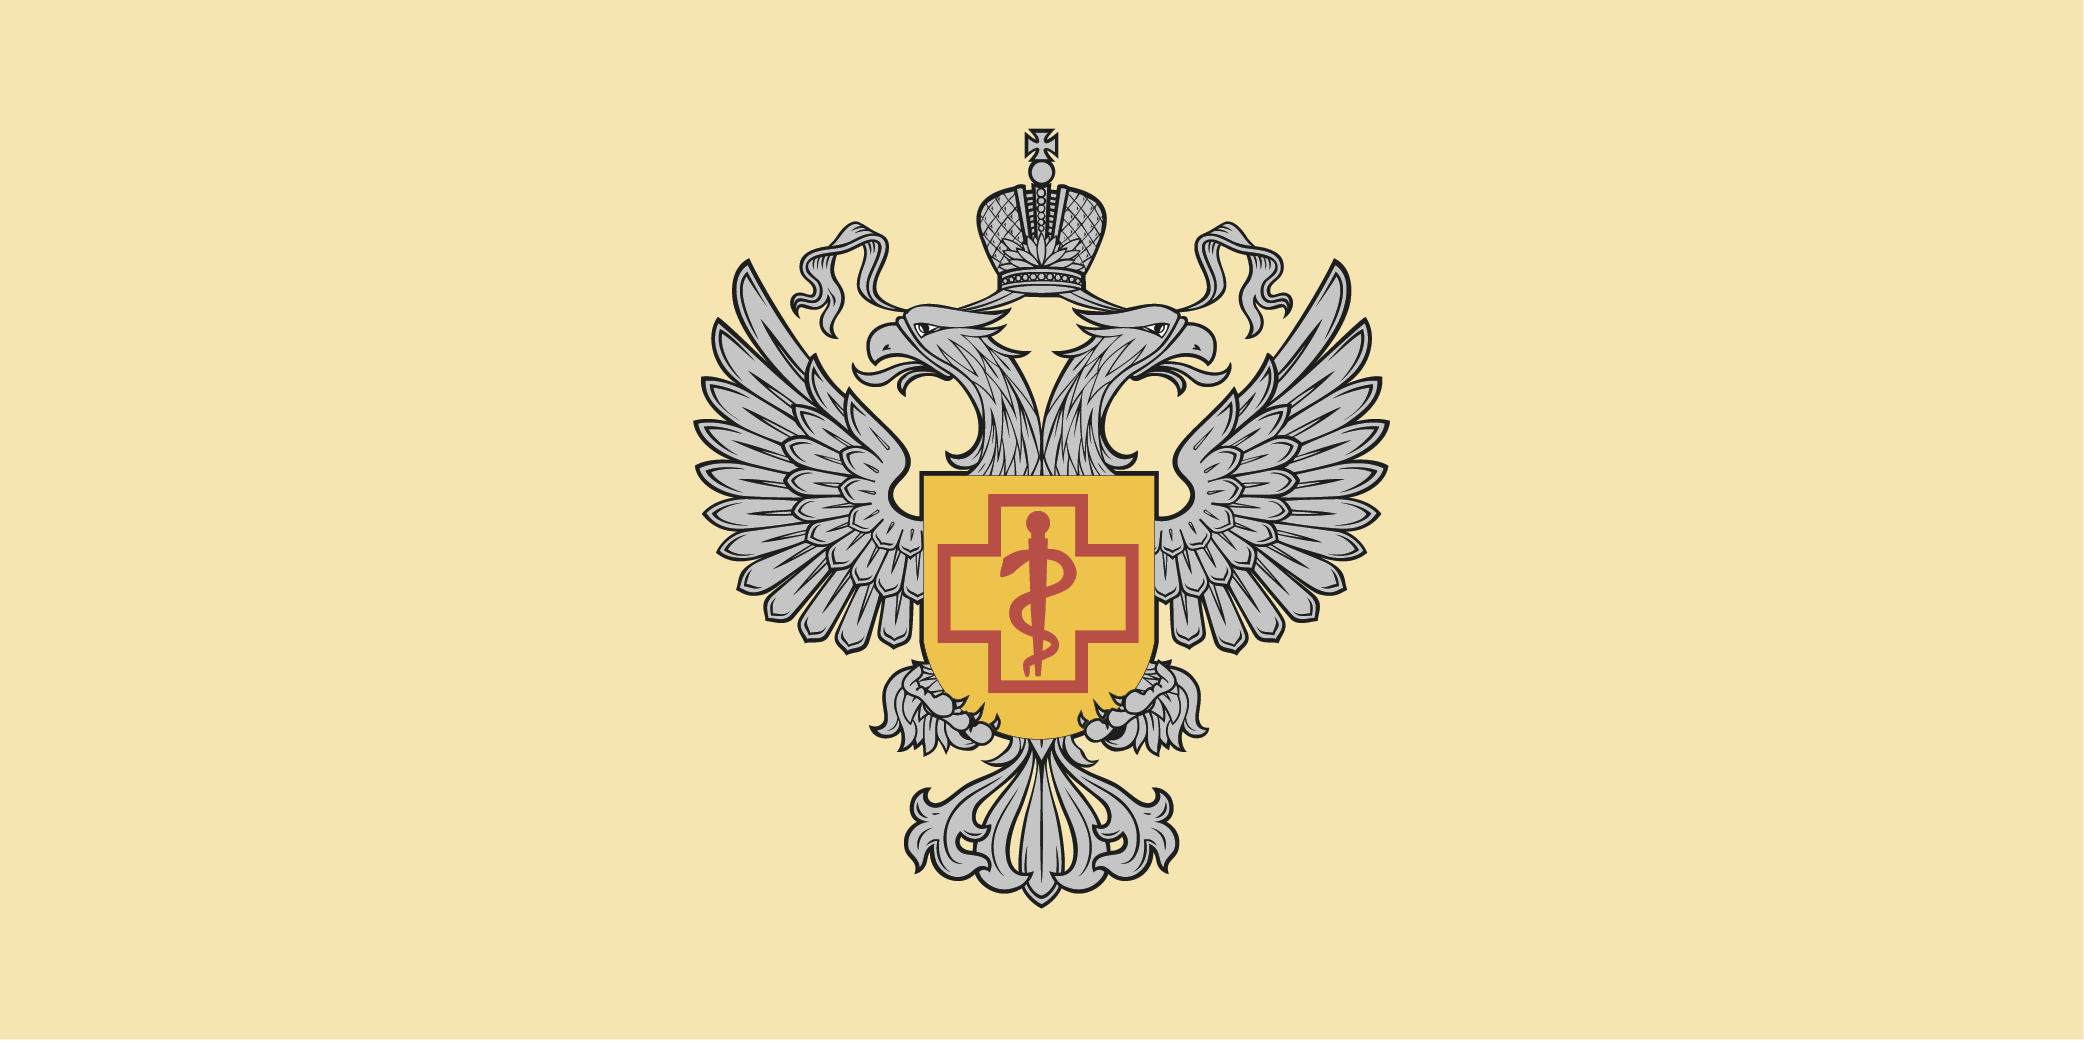 Логотип Правительства Российской Федерации